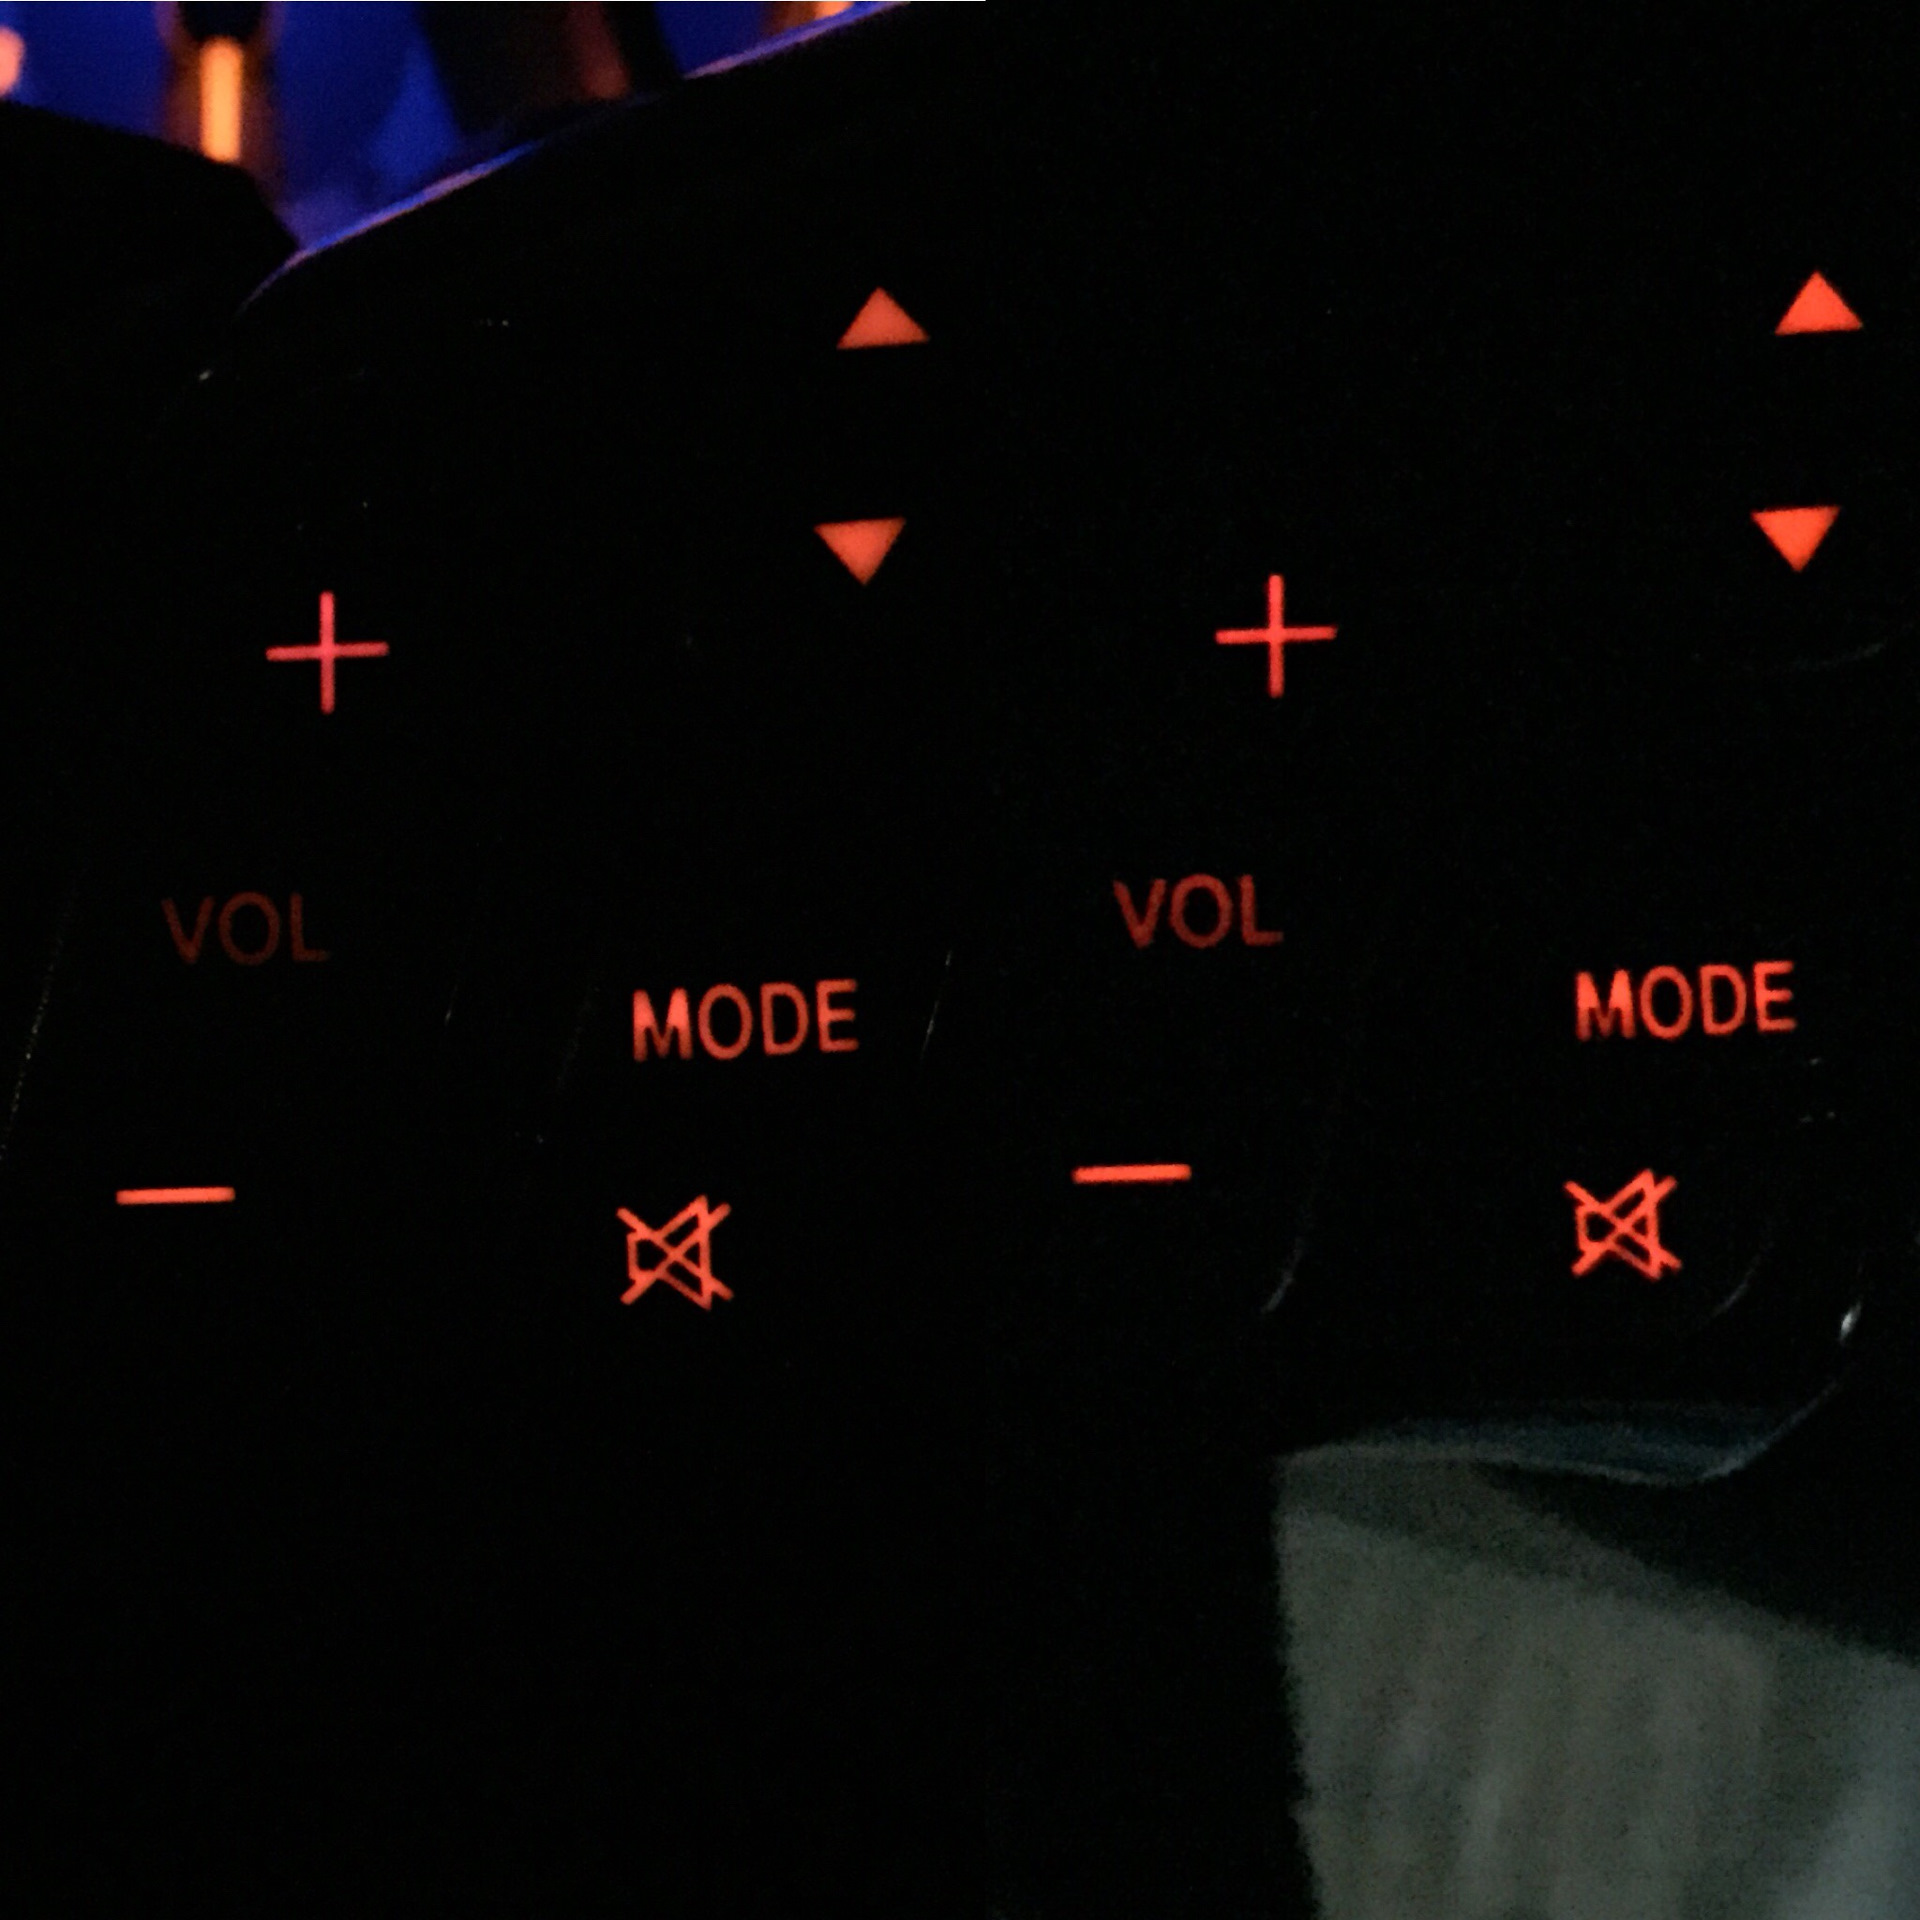 Доработка подсветки. Mazda gg подсветка кнопок. Панель управления магнитолы задних пассажиров. Подсветка кнопок на магнитоле Тойес на фокус 3. Подсветка кнопок управления Мазда СХ-5 ночное время.